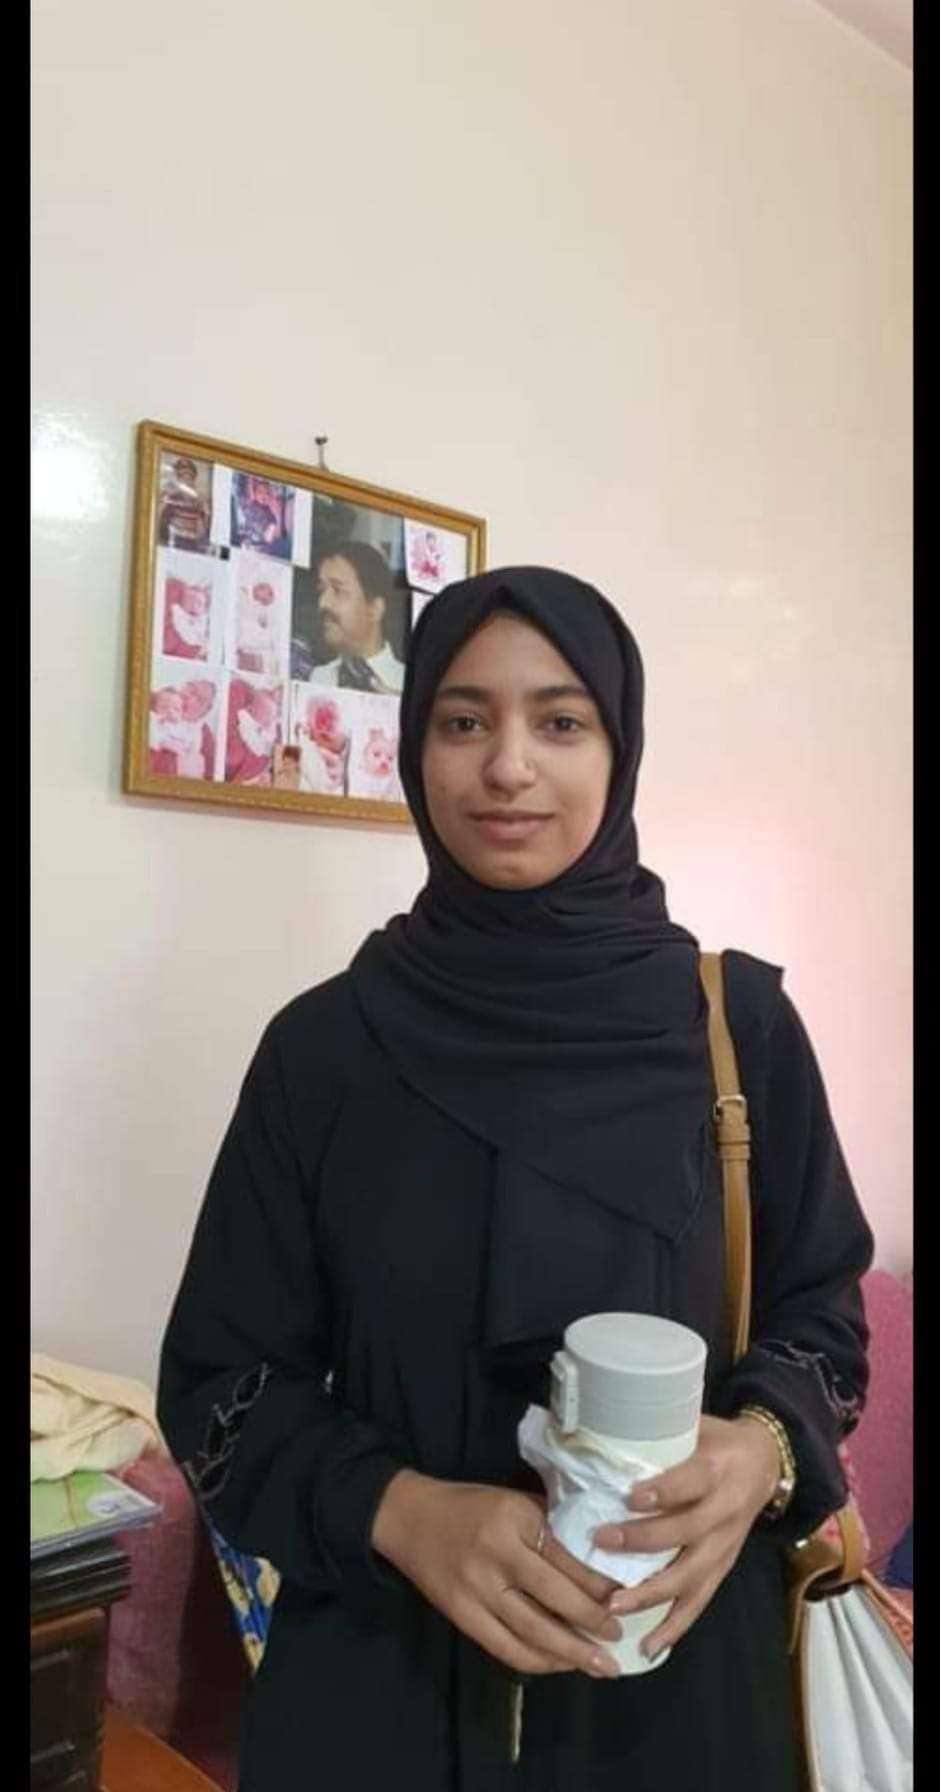 تفاصيل تنشر لأول مرة بشأن وفاة طالبة جامعية في قلب العاصمة صنعاء(صدمة للجميع)